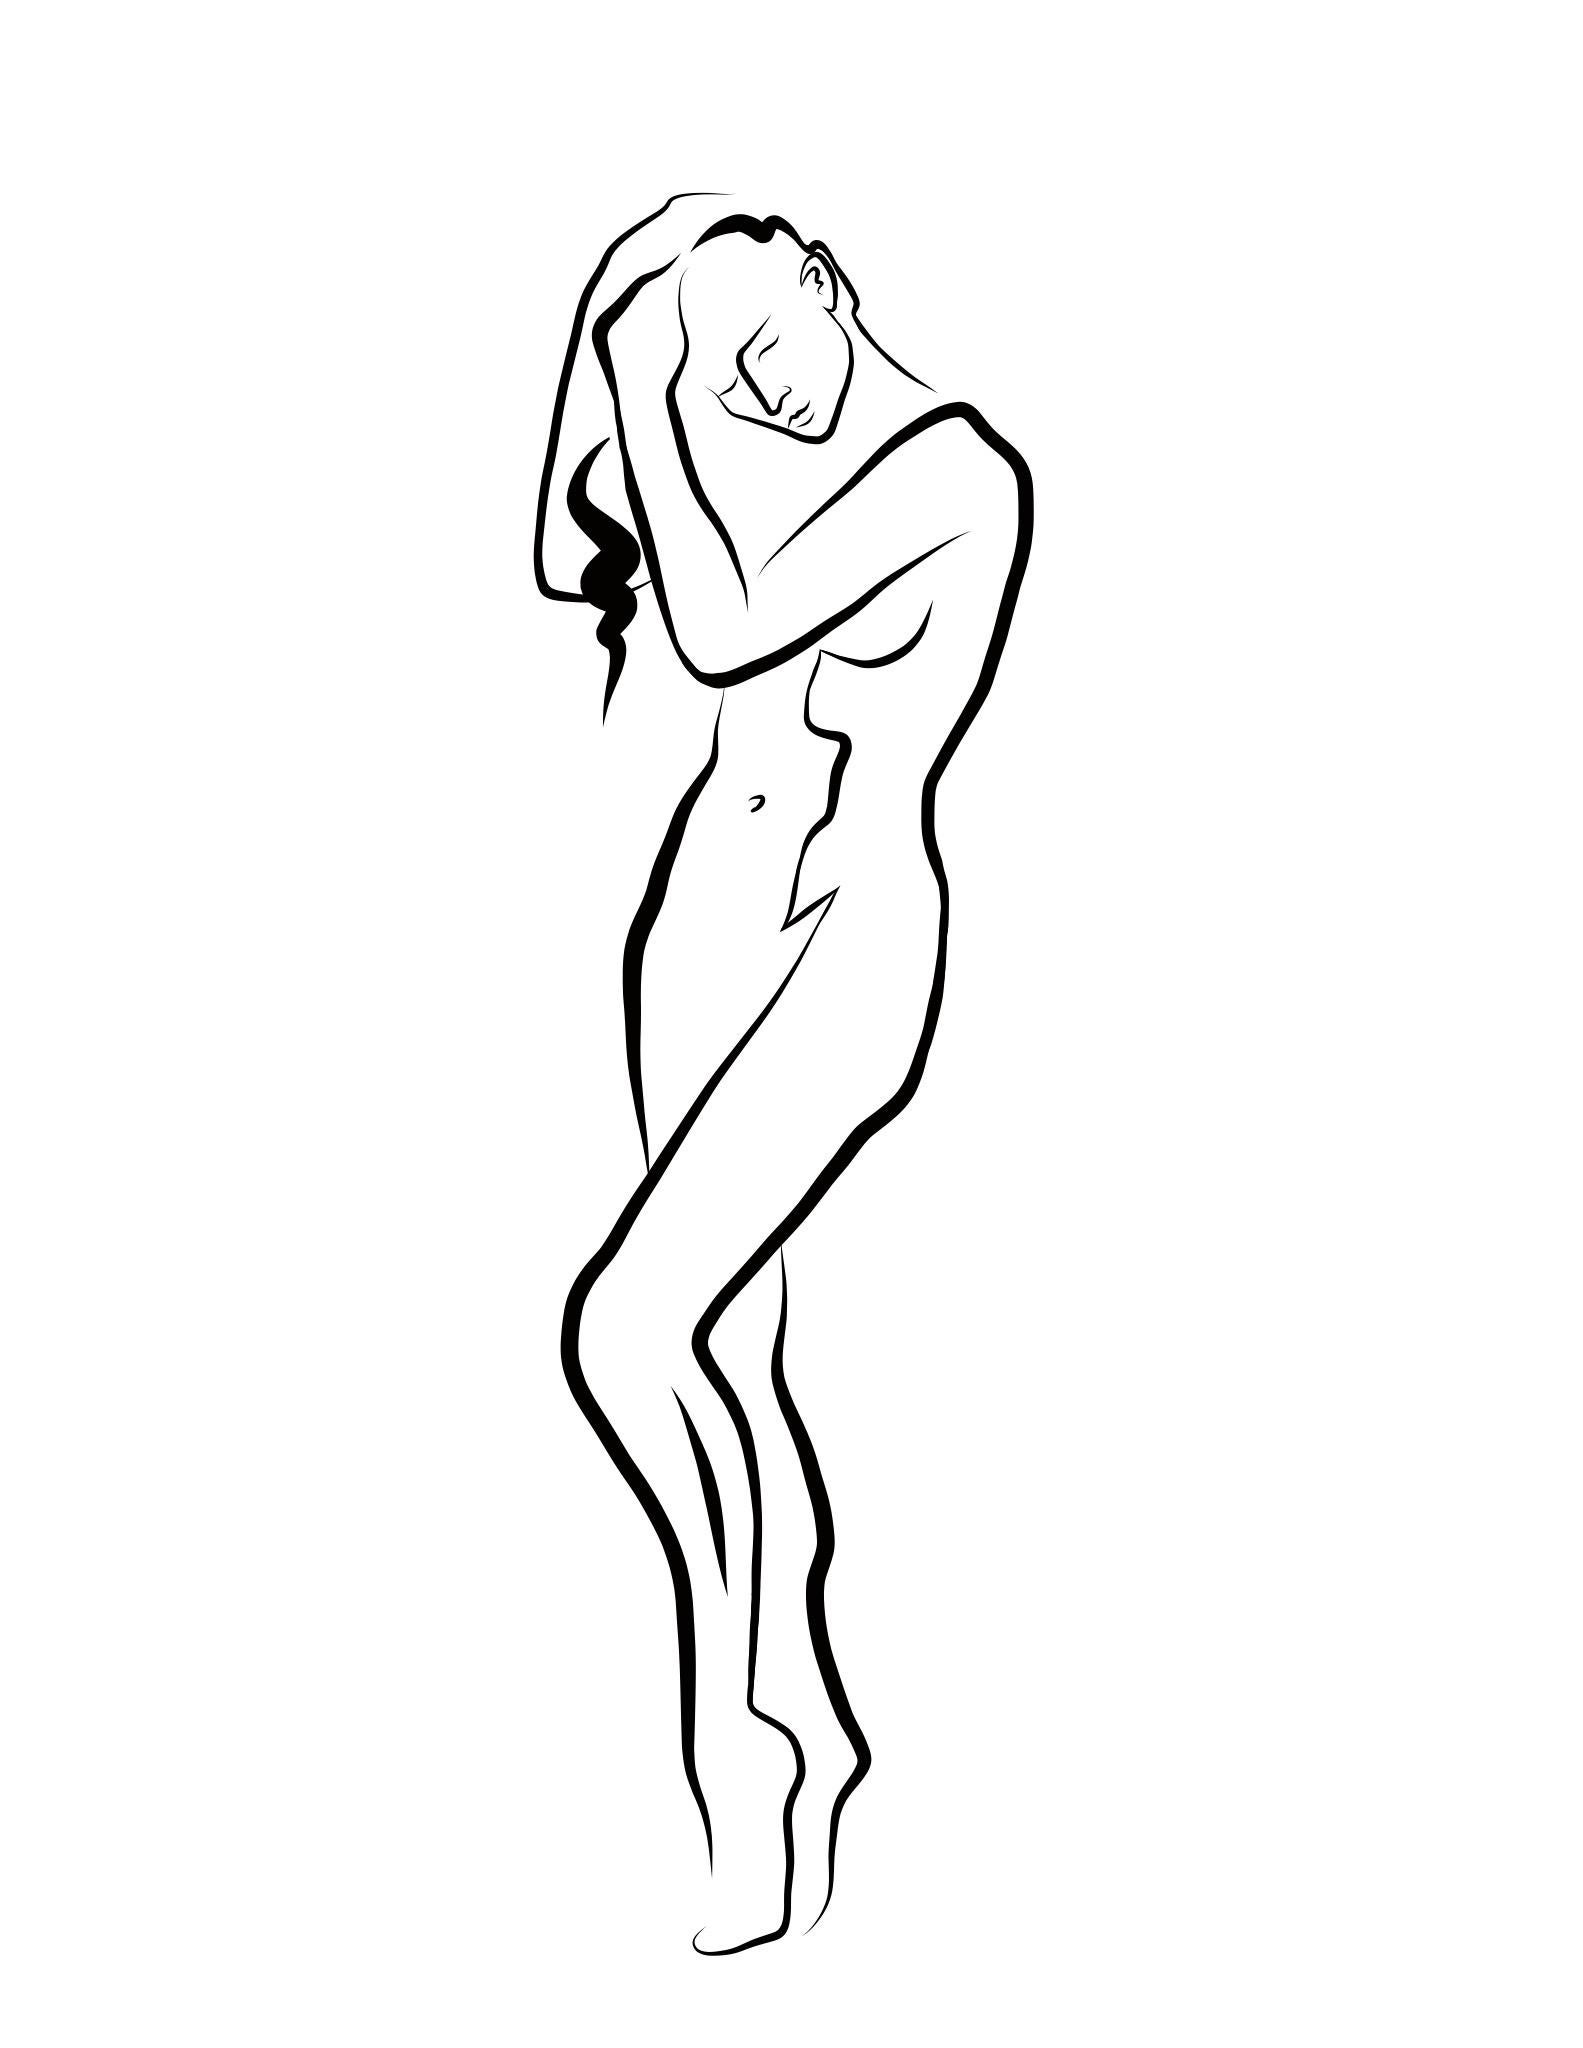 Michael Binkley Nude Print - Haiku #60 - Digital Vector Drawing Female Nude Standing Arranging Hair